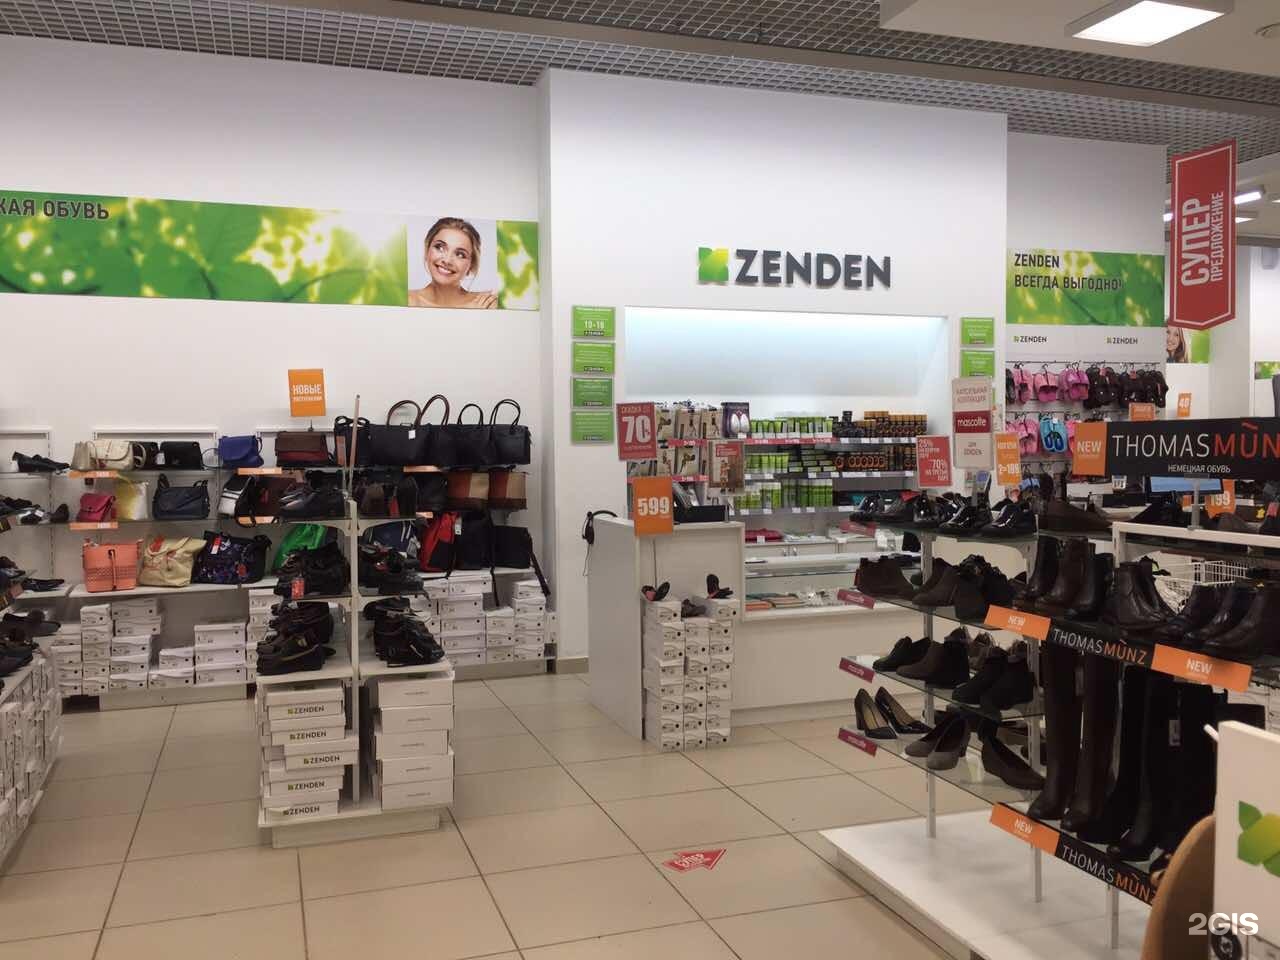 Сайт зенден оренбург. Обувной магазин Zenden. Магазин зенден обувь. Витрина зенден. Зенден фото магазина.